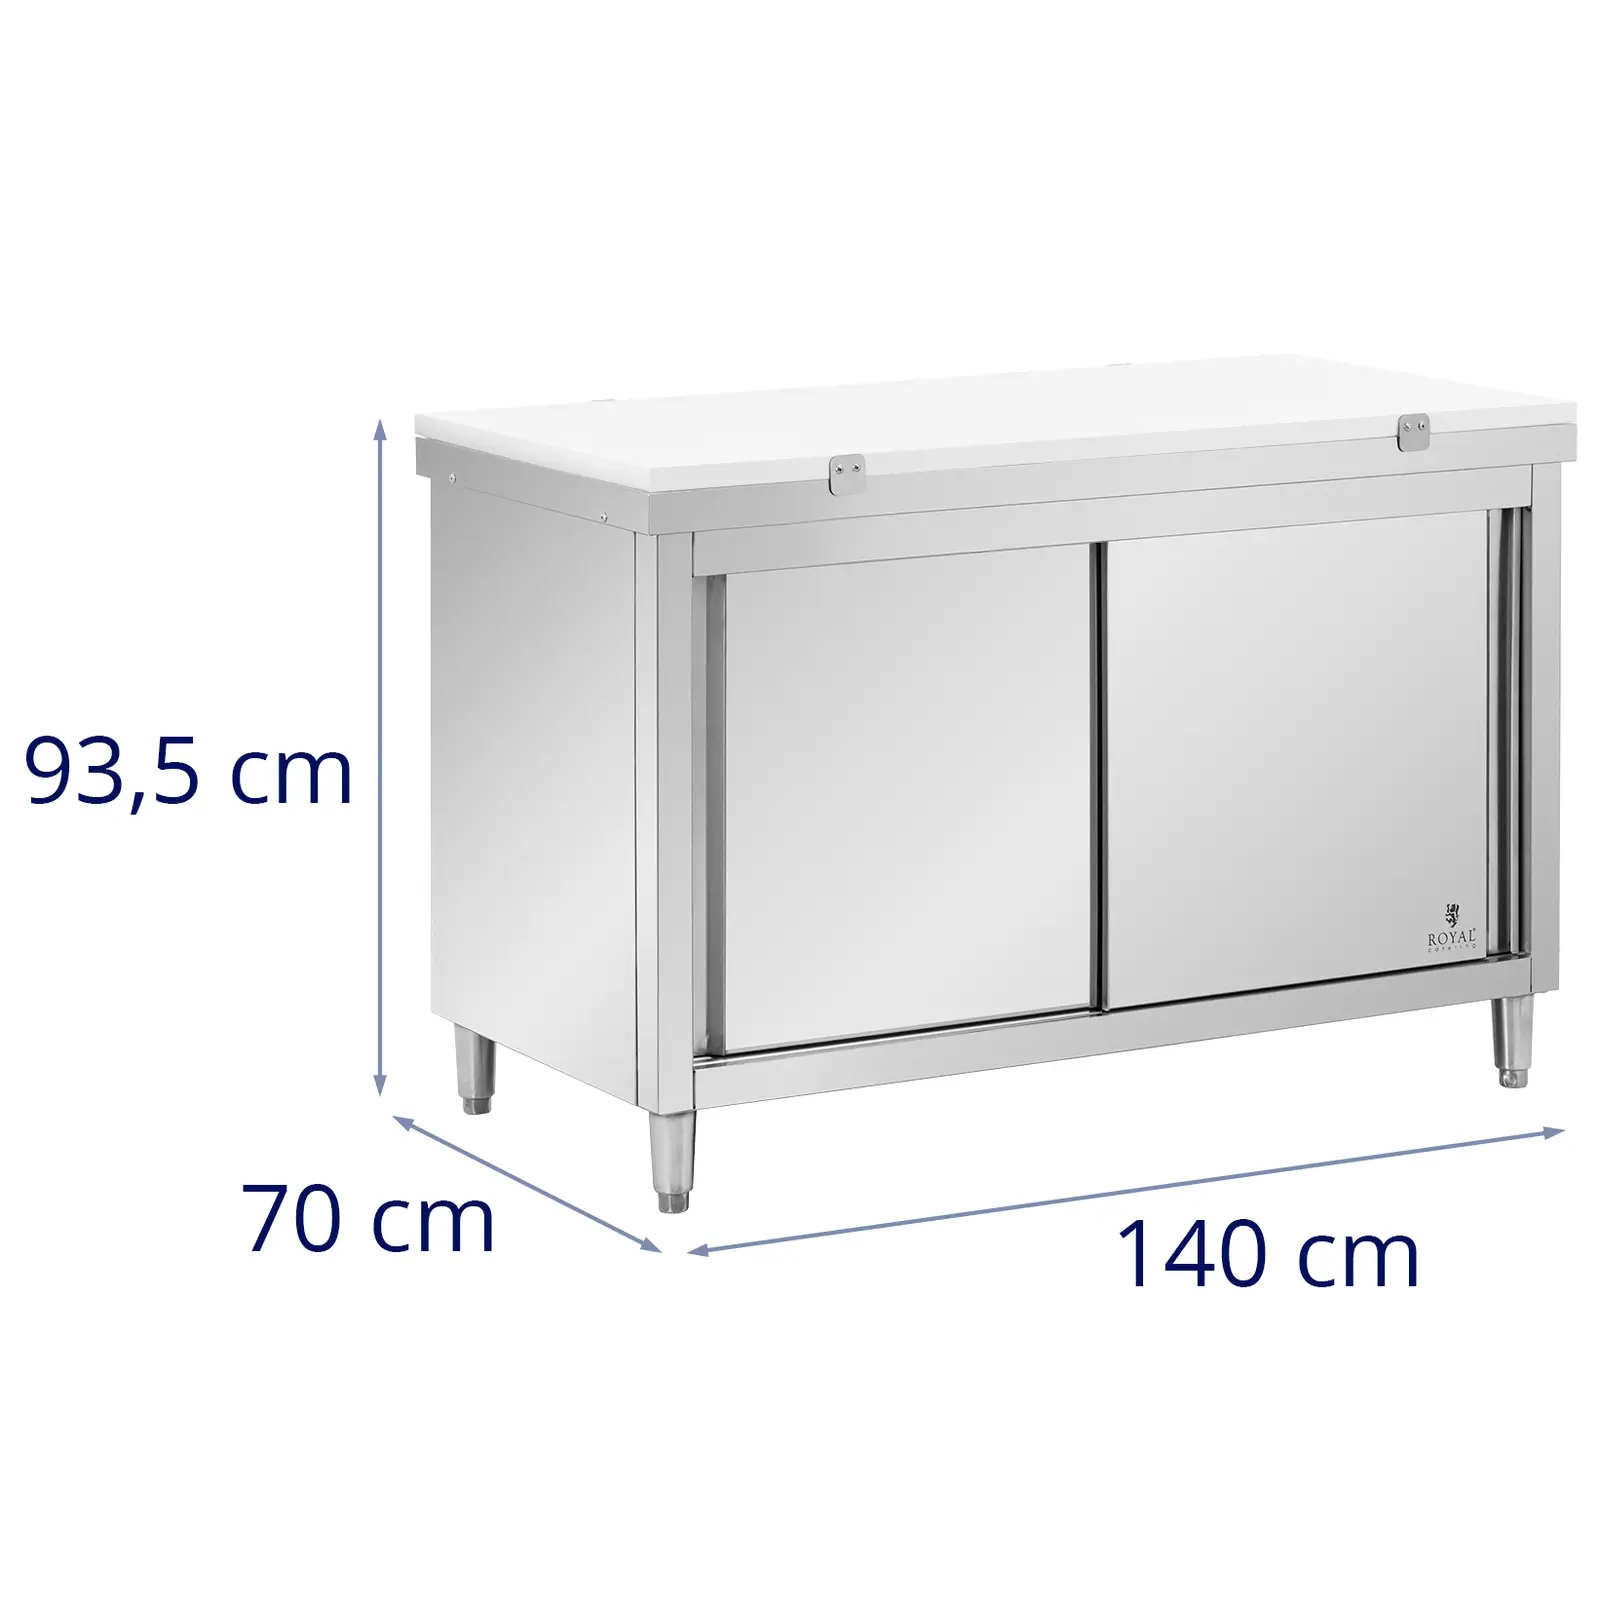 Rozsdamentes acél munkaszekrény - 140 x 70 cm - 500 kg terhelhetőség - tartalmazza Vágódeszka - Royal Catering